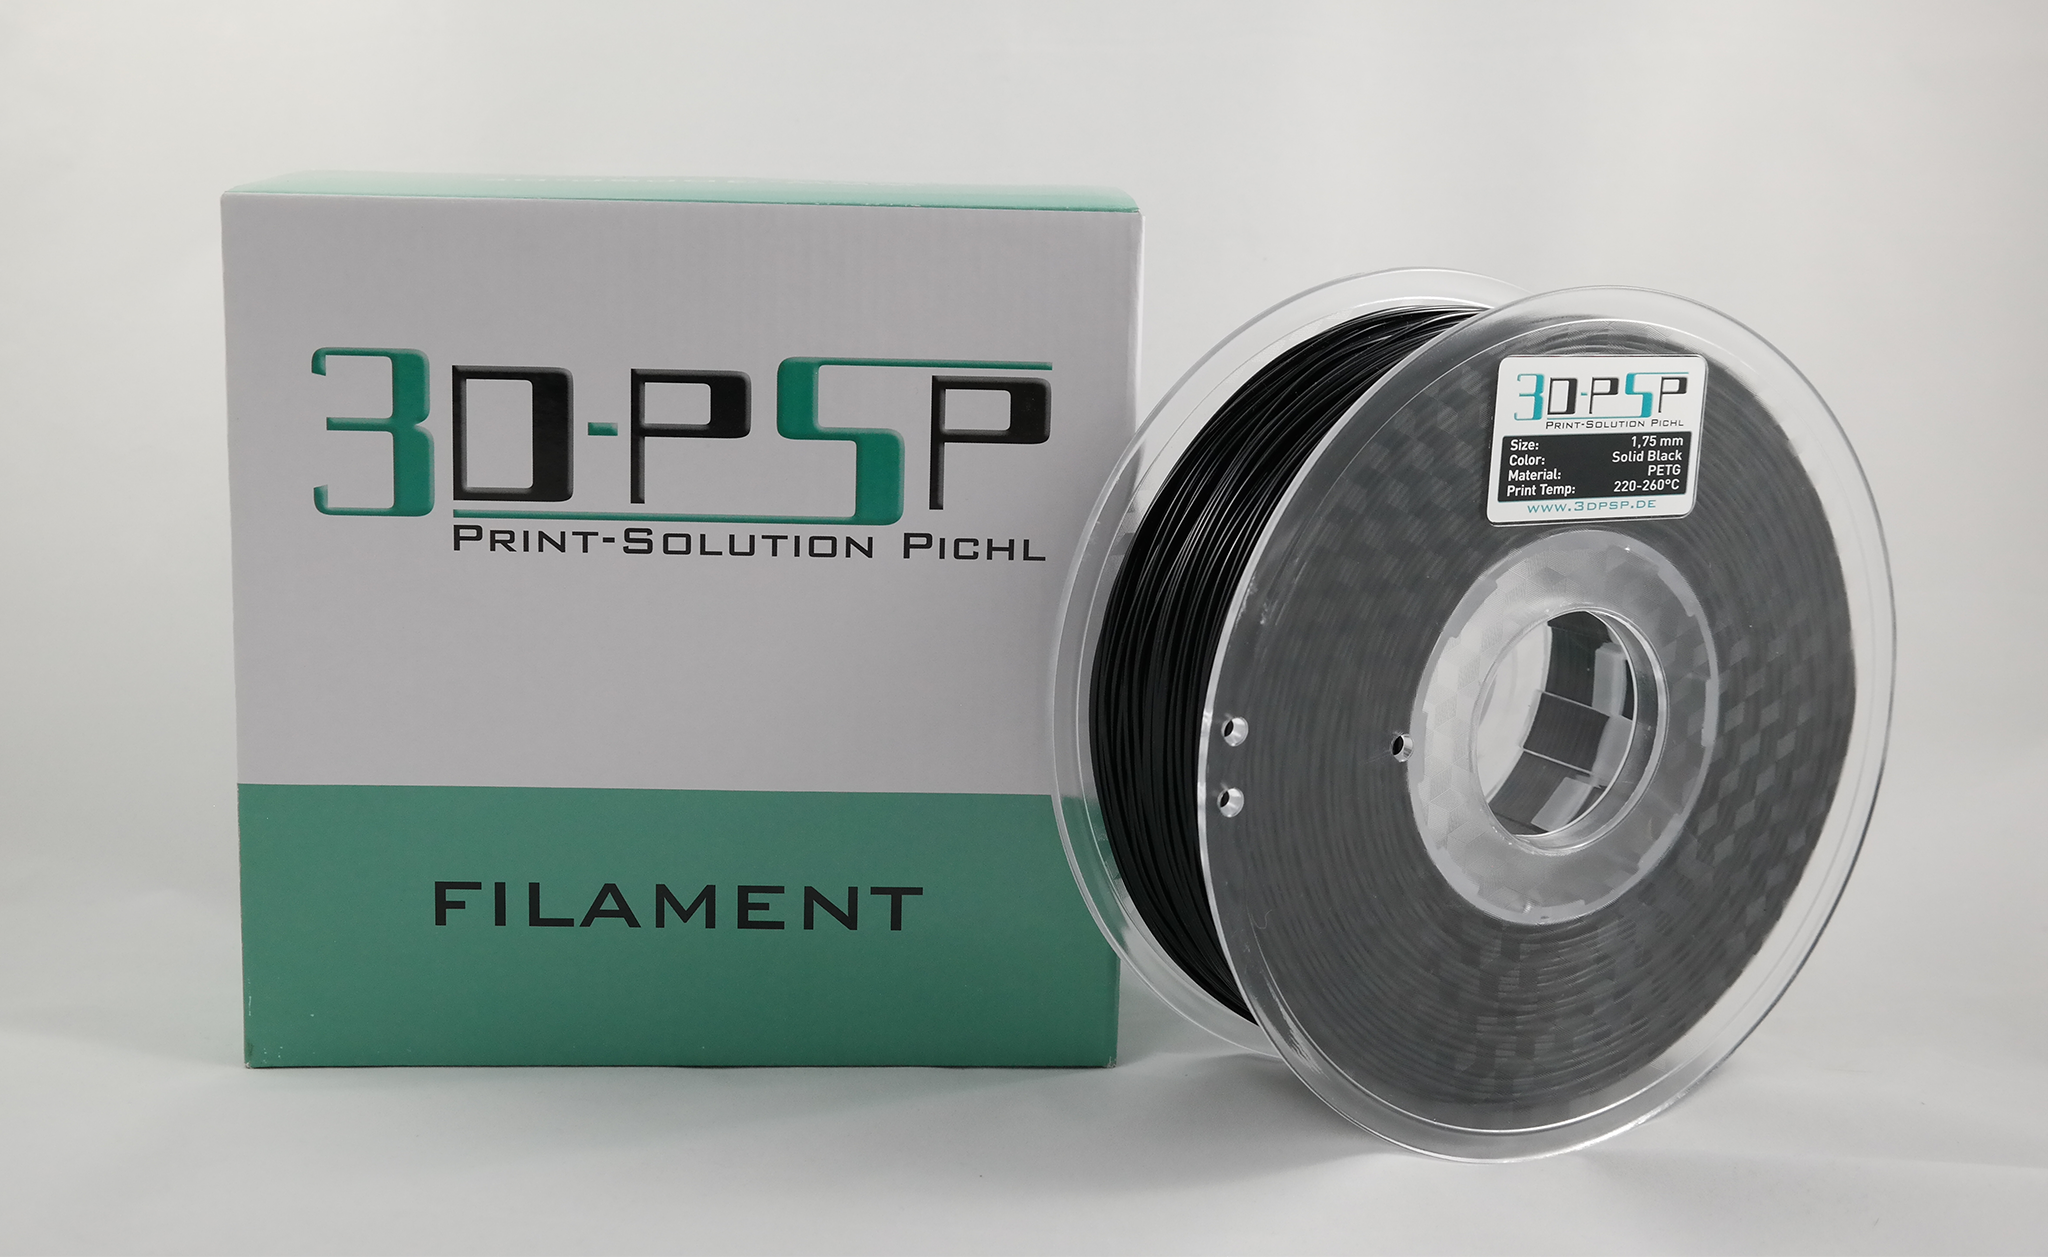 3DPSP PETG Filament - Solid Black - 1.75mm - 1Kg